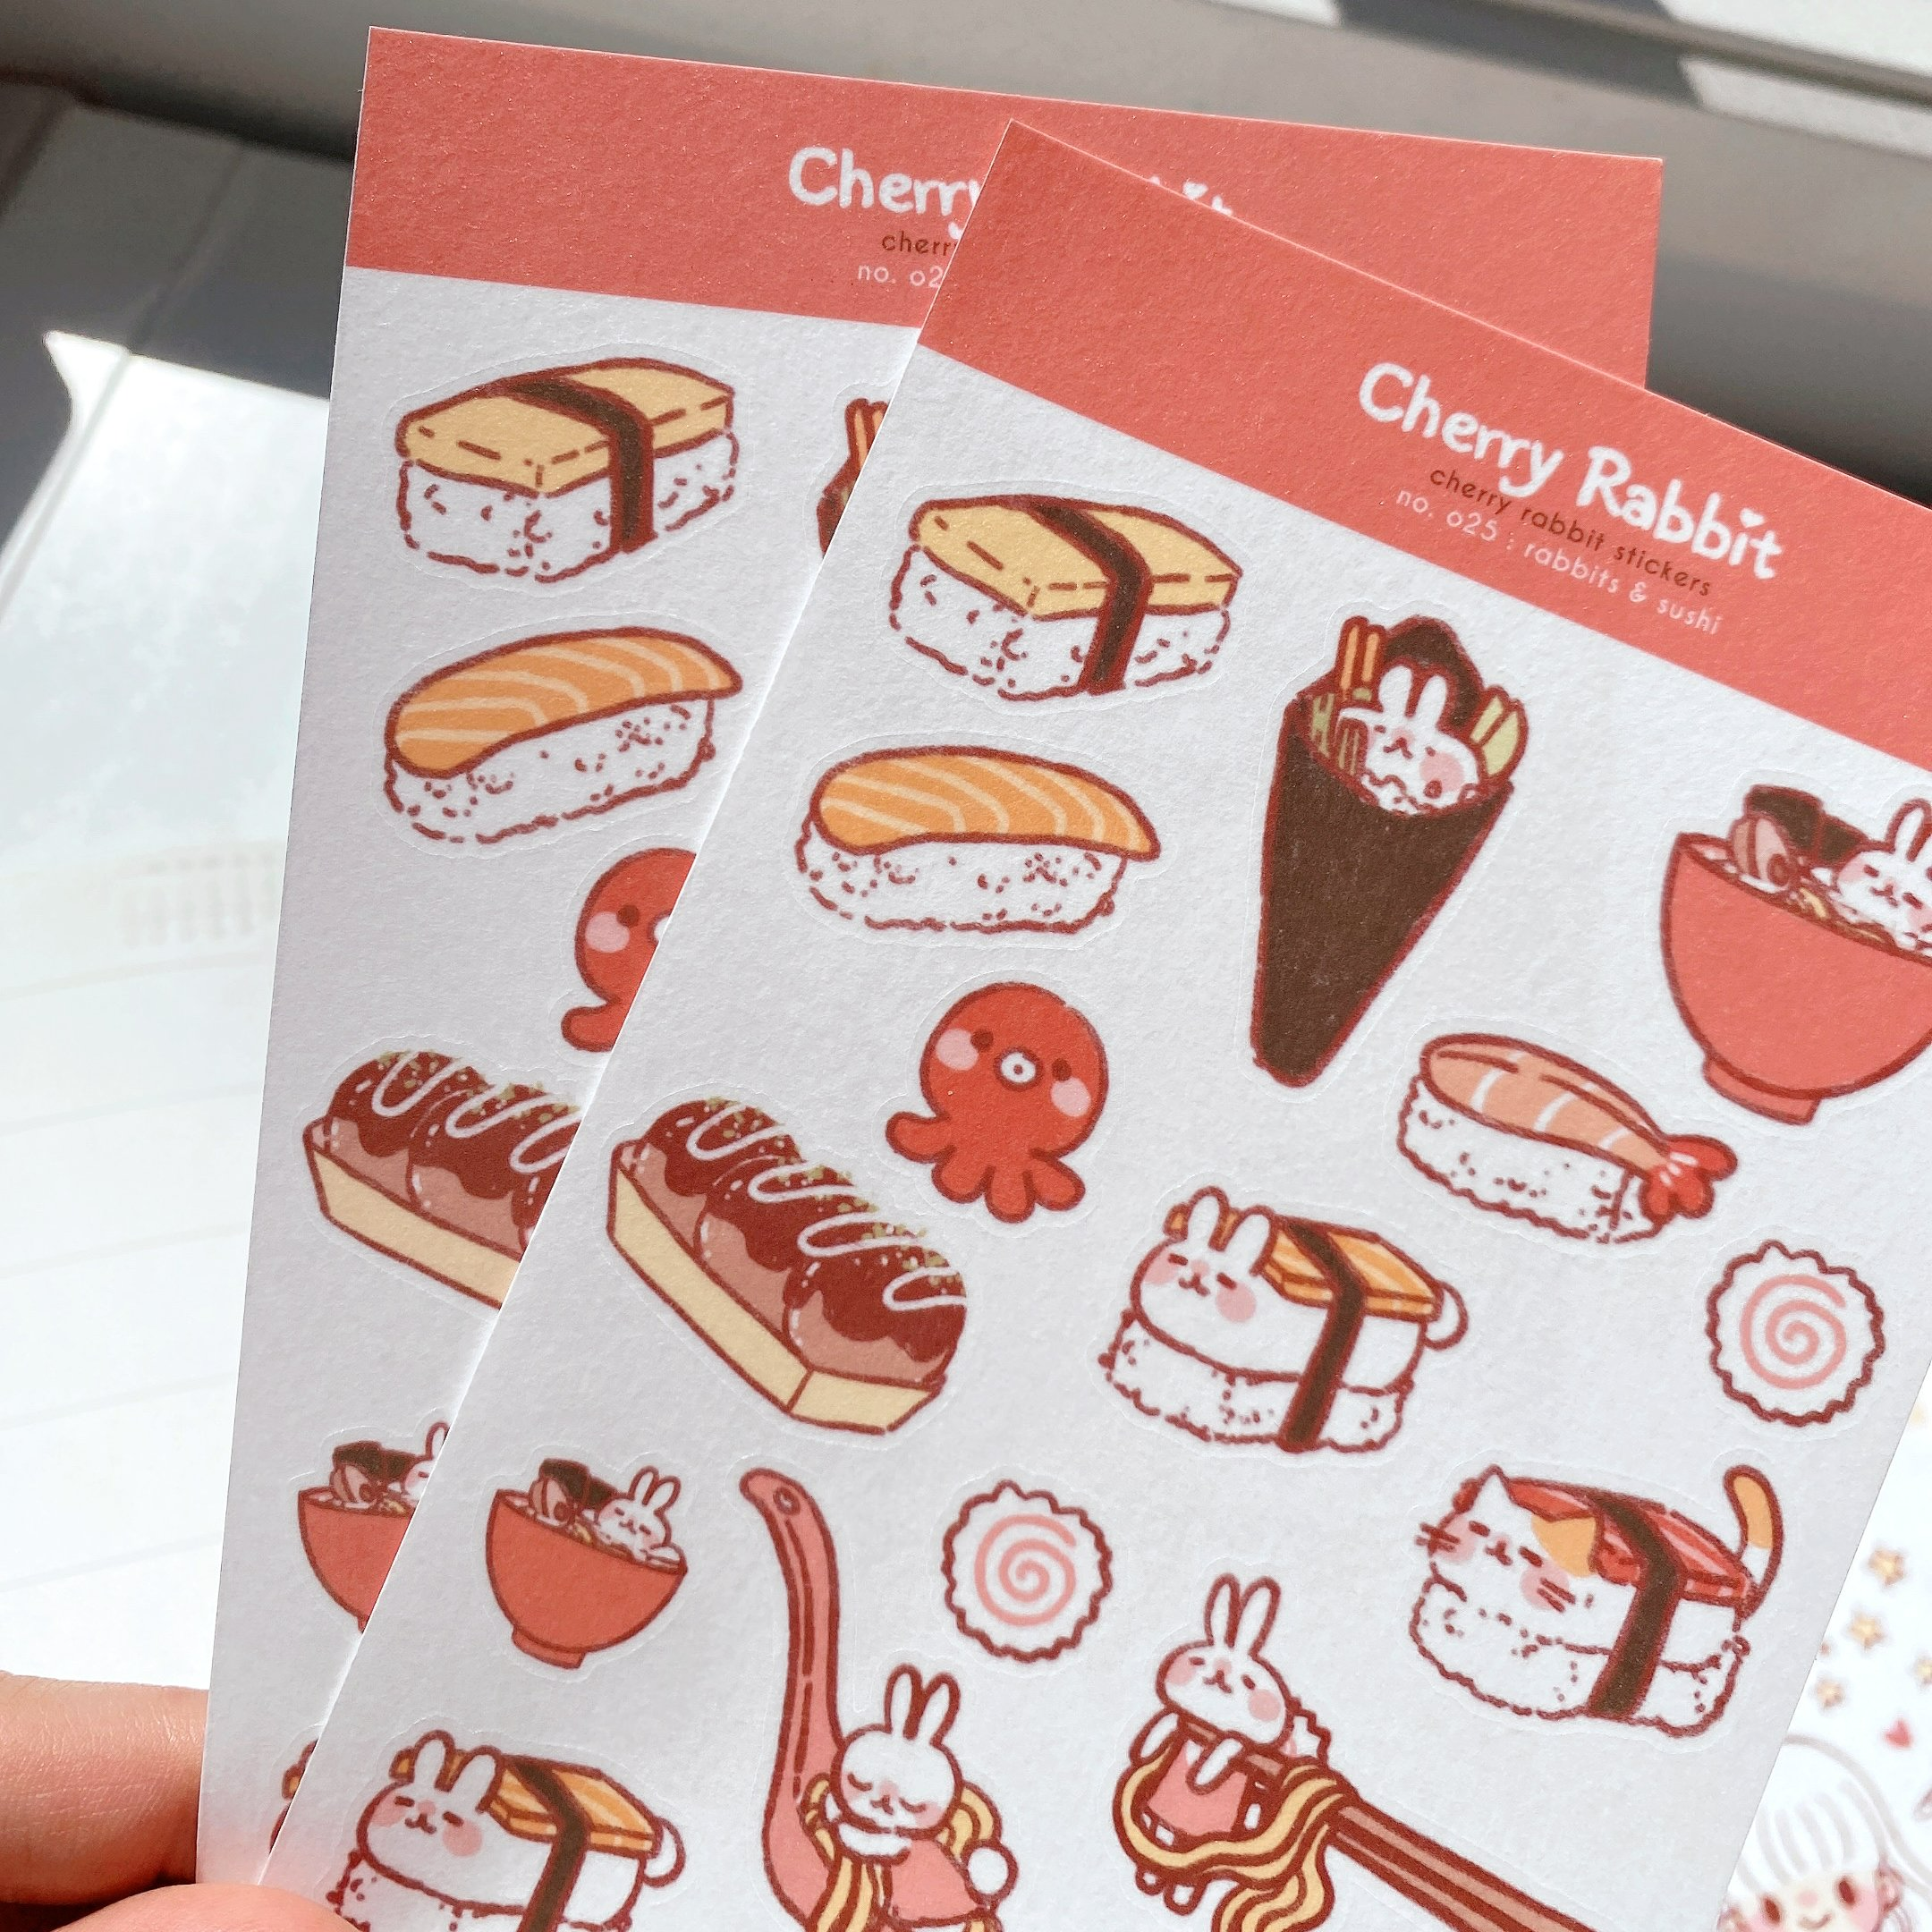 Rabbits & Sushi Sticker Sheet by Cherry Rabbit